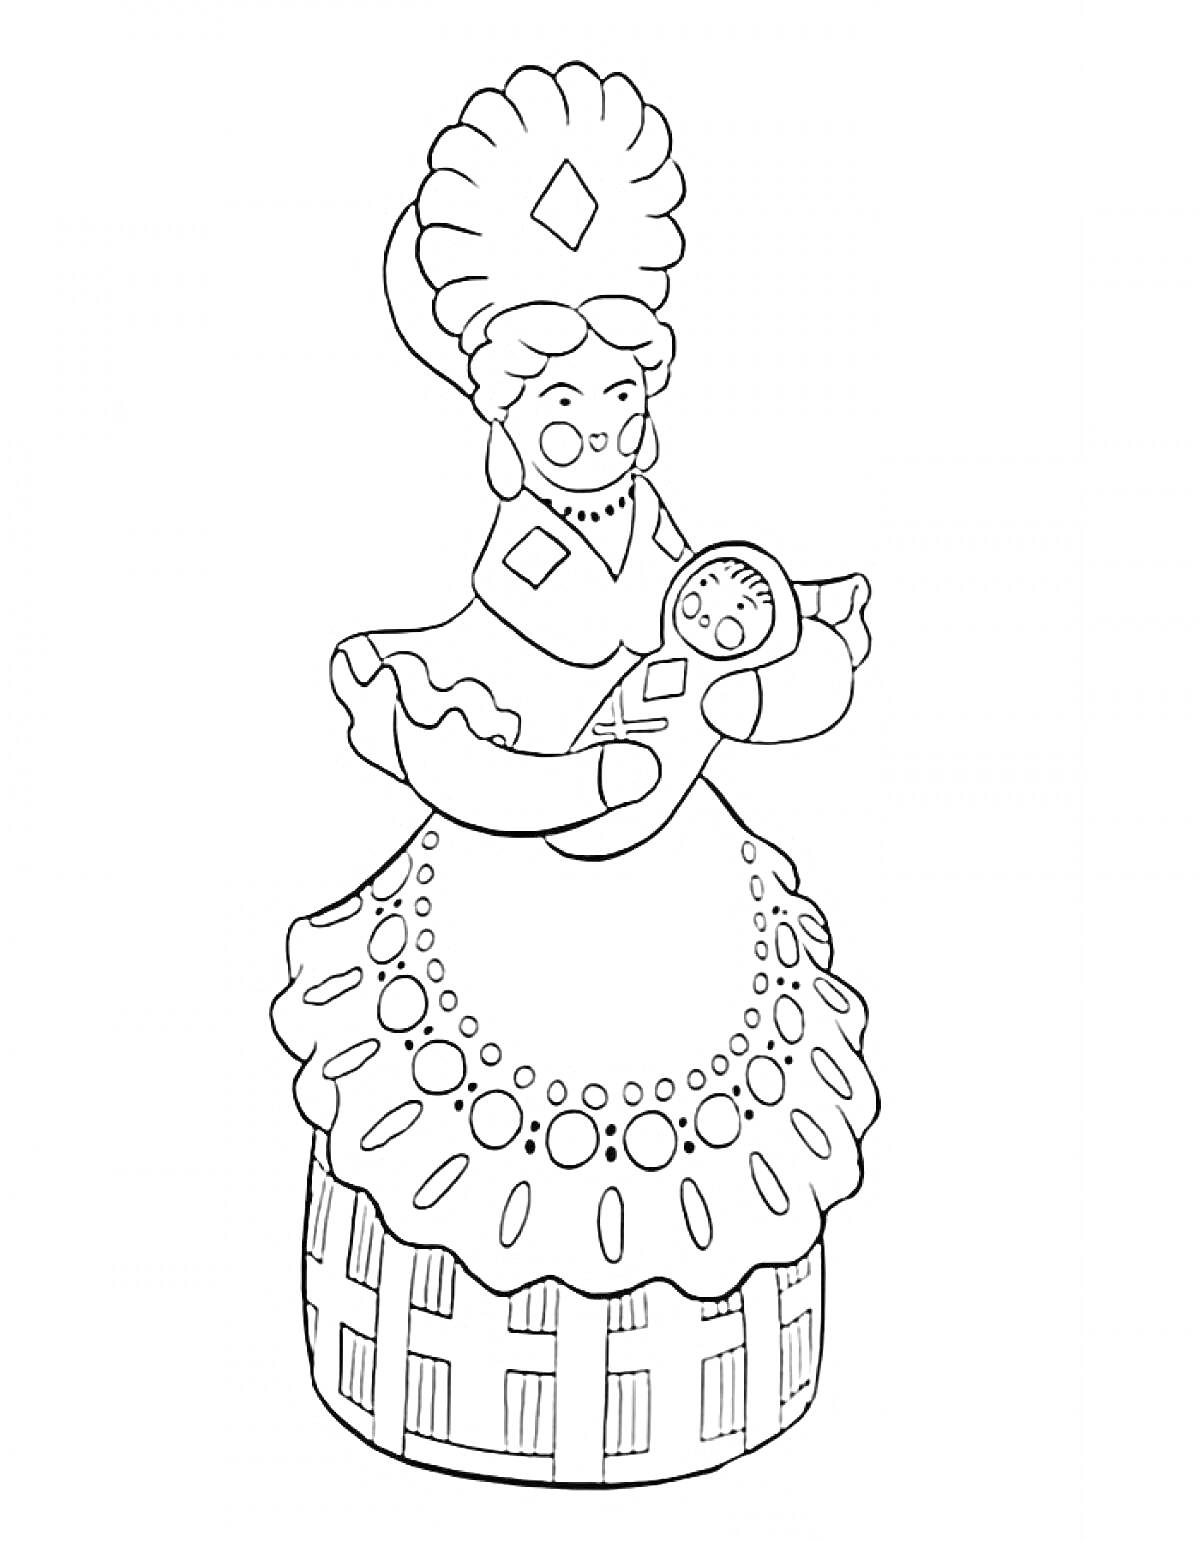 Раскраска Дымковская барышня с младенцем в руках, в головном уборе и платье с узорами